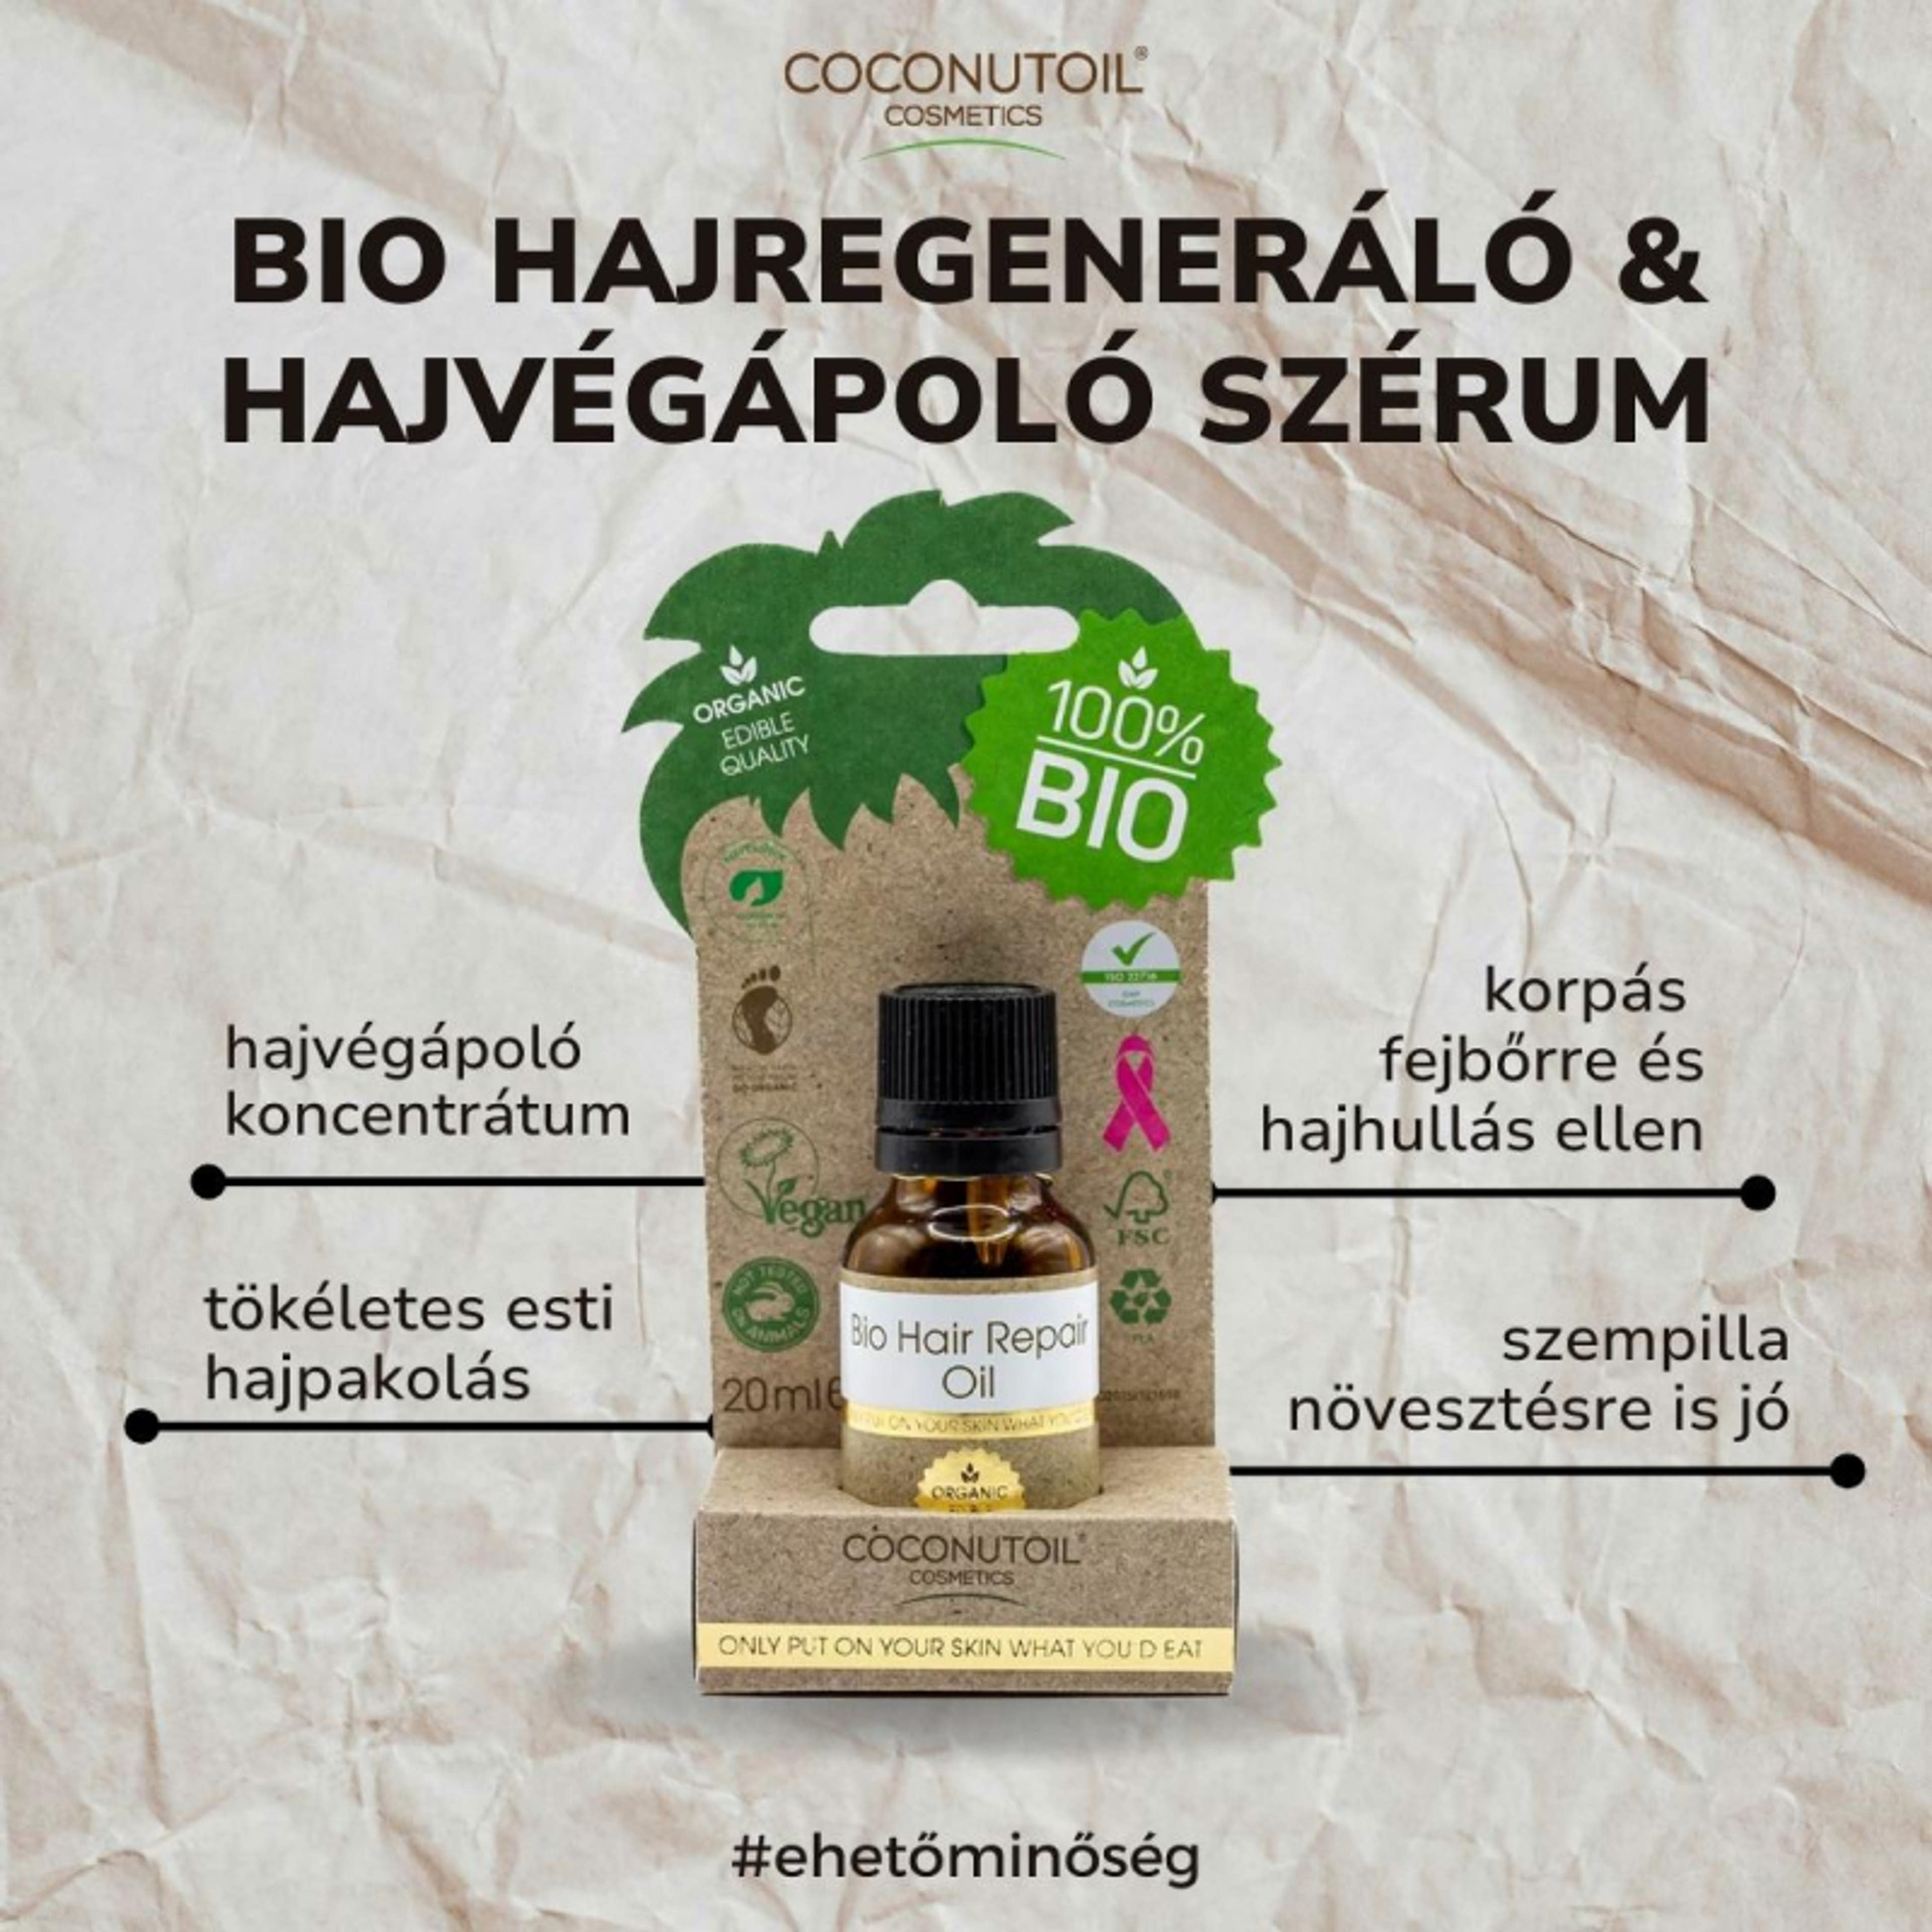 Coconutoil Cosmetics Bio hajregeneráló és hajvégápoló szérum - 20 ml-3